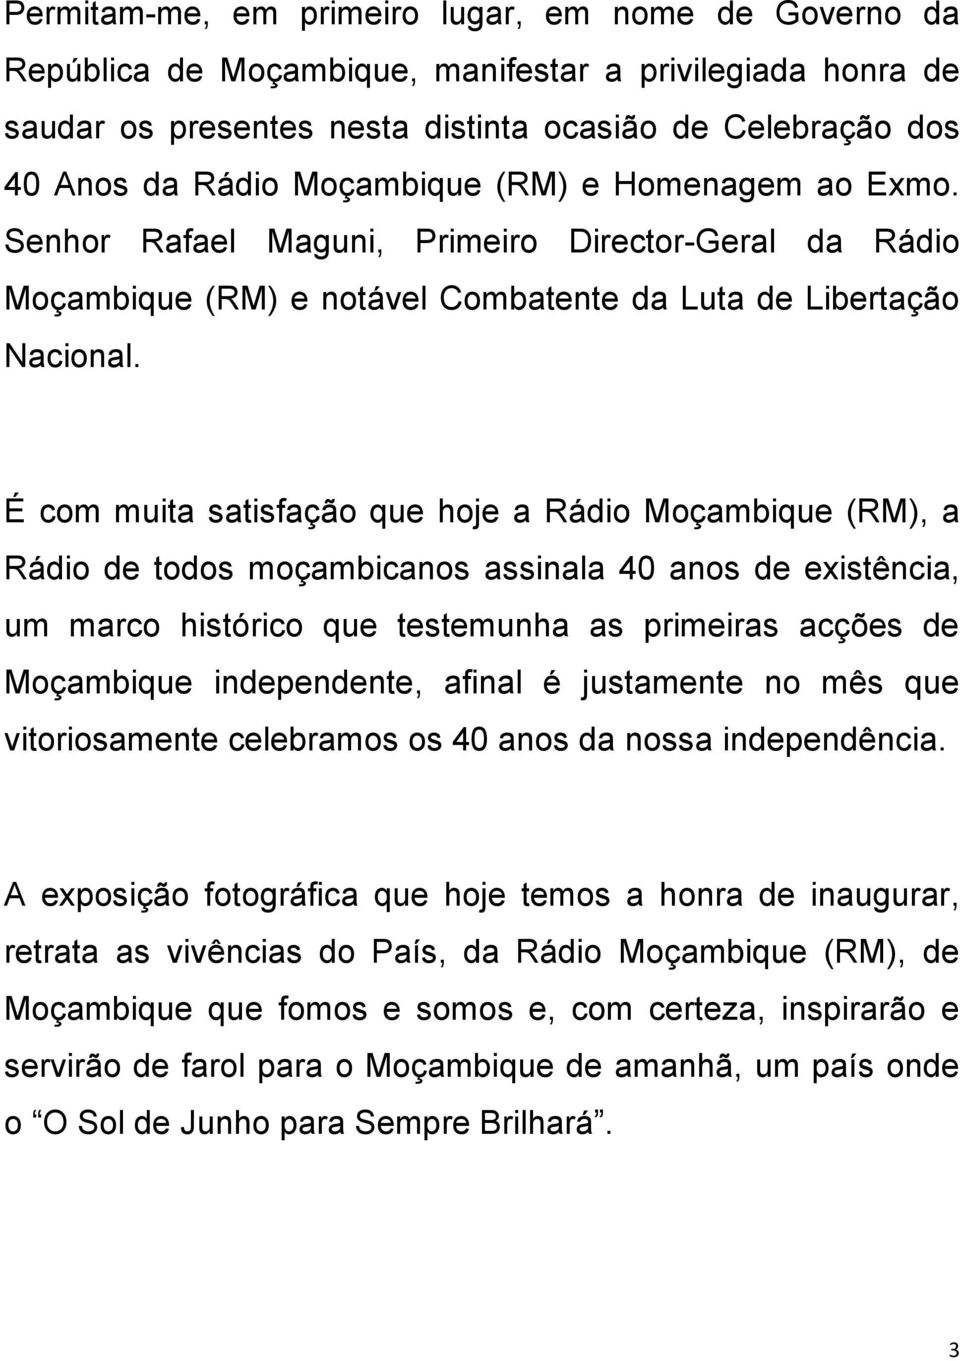 É com muita satisfação que hoje a Rádio Moçambique (RM), a Rádio de todos moçambicanos assinala 40 anos de existência, um marco histórico que testemunha as primeiras acções de Moçambique